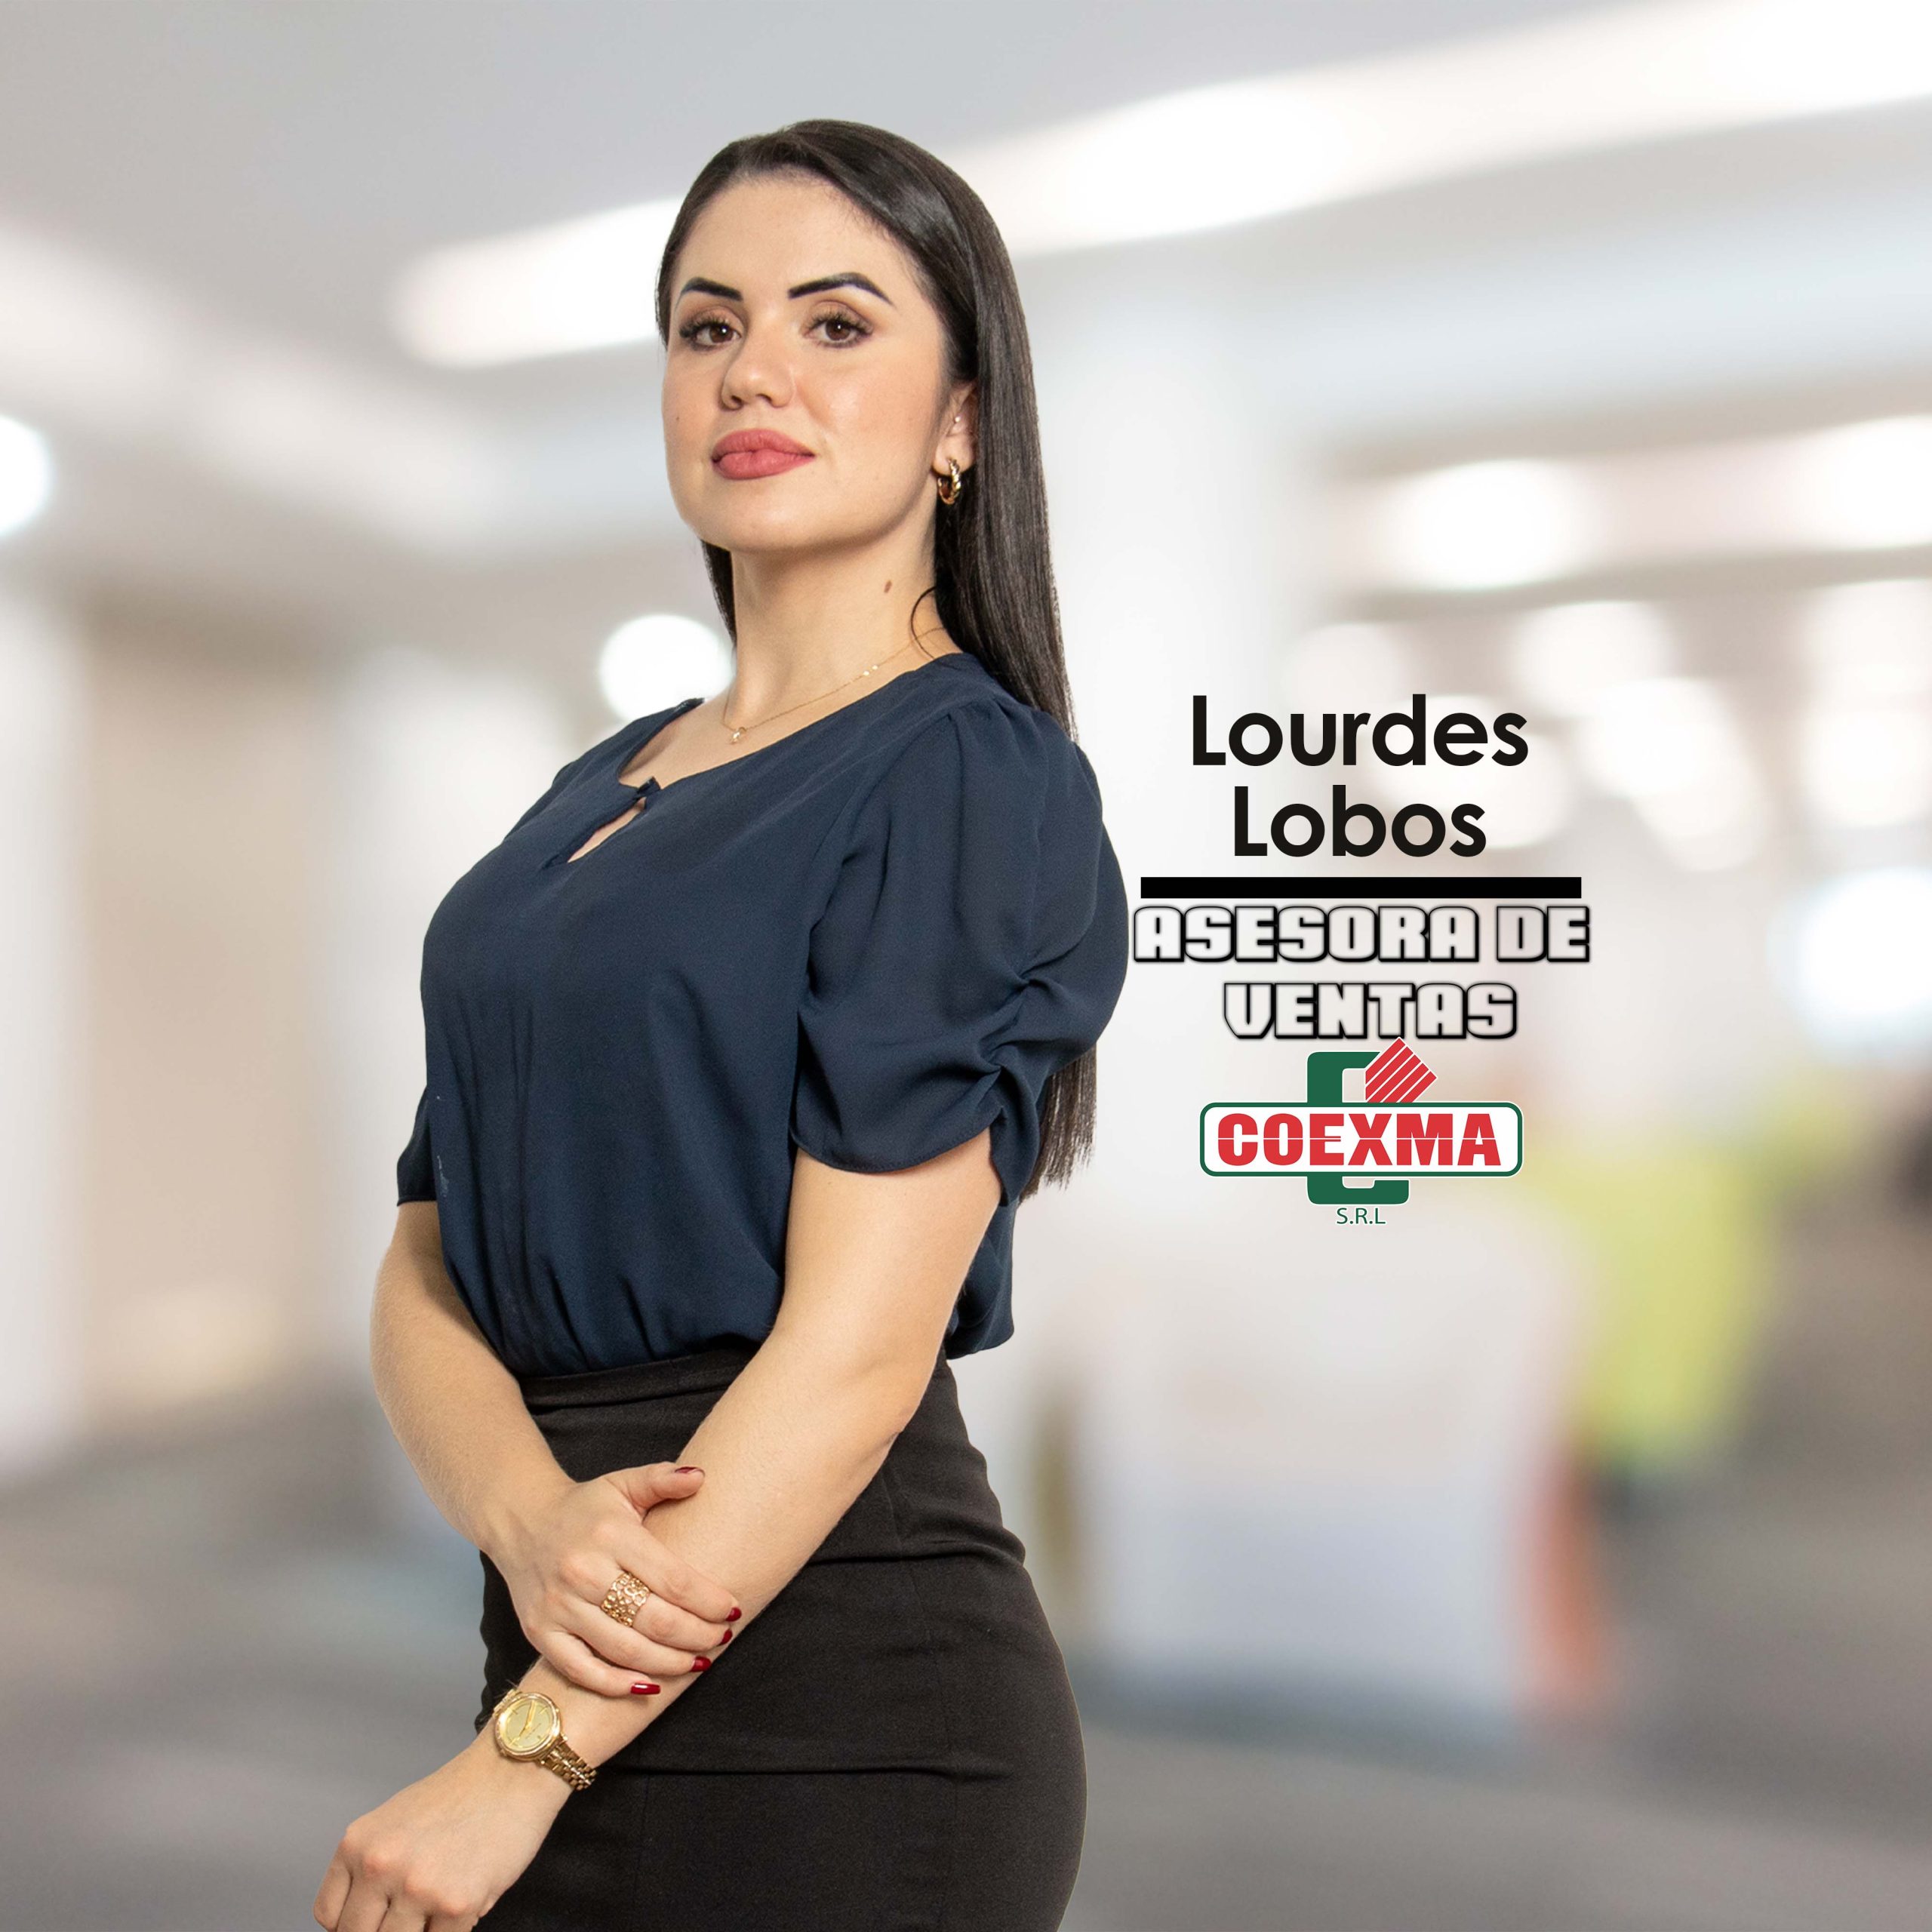 Lourdes Lobos